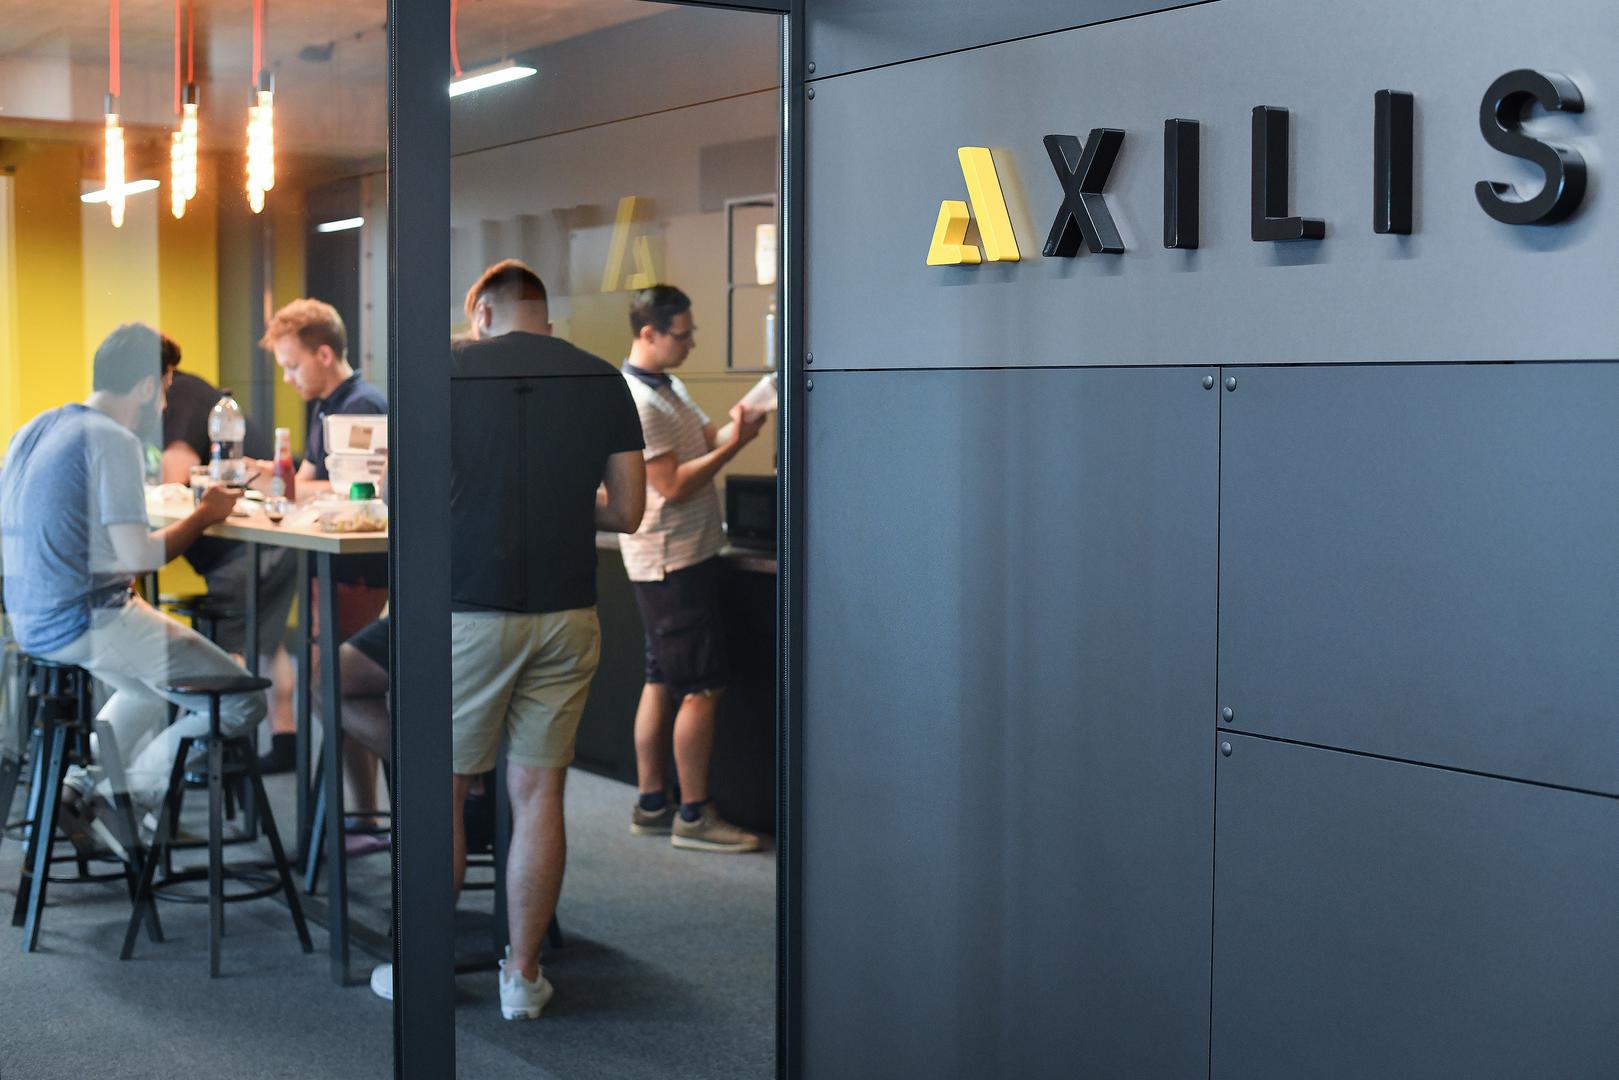 Ured je u Zagrebu, ali Axilis posluje isključivo na inozemnom tržištu